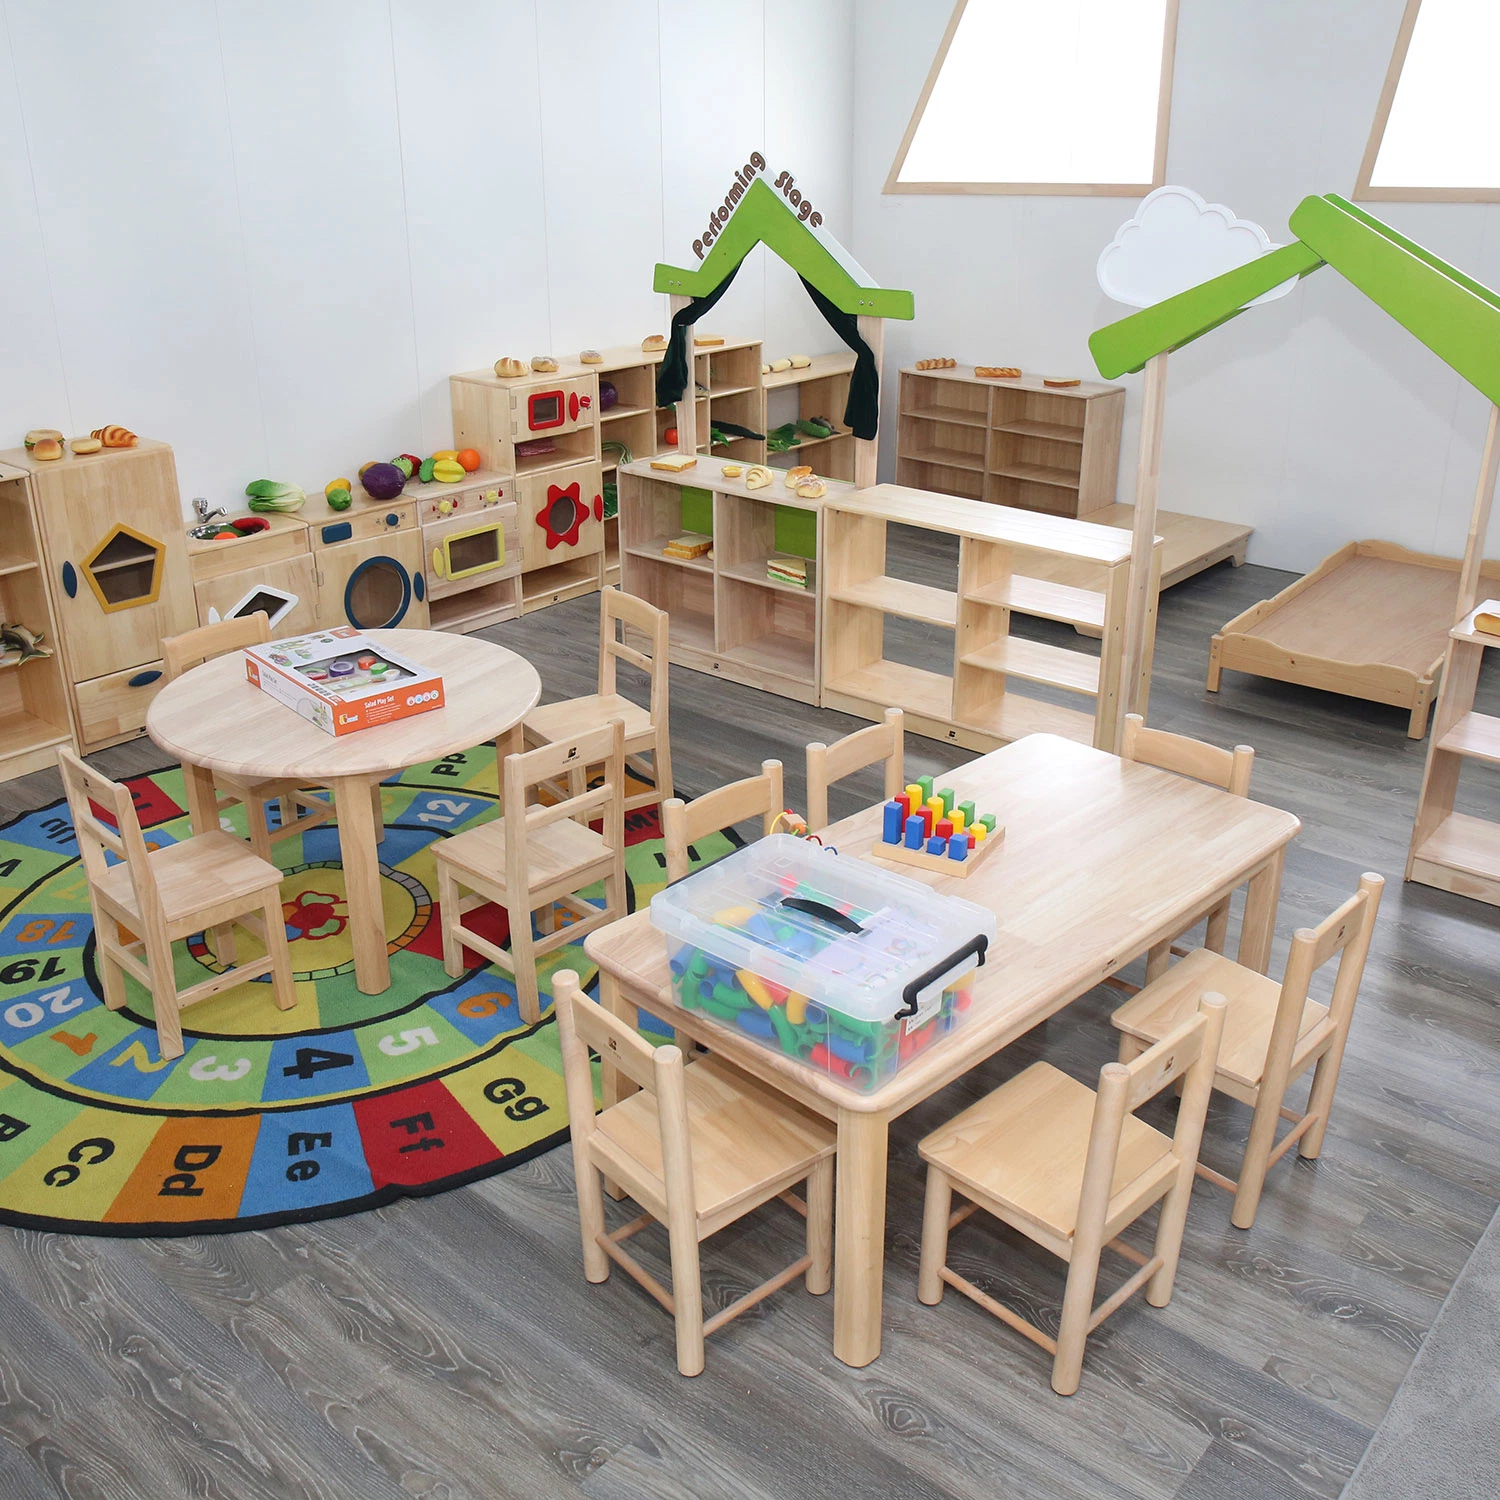 Usine de gros en Chine de mobilier pour enfants pour la maternelle, meubles en bois pour bébés, tables et chaises pour la maternelle, mobilier de chaise pour étudiants en classe